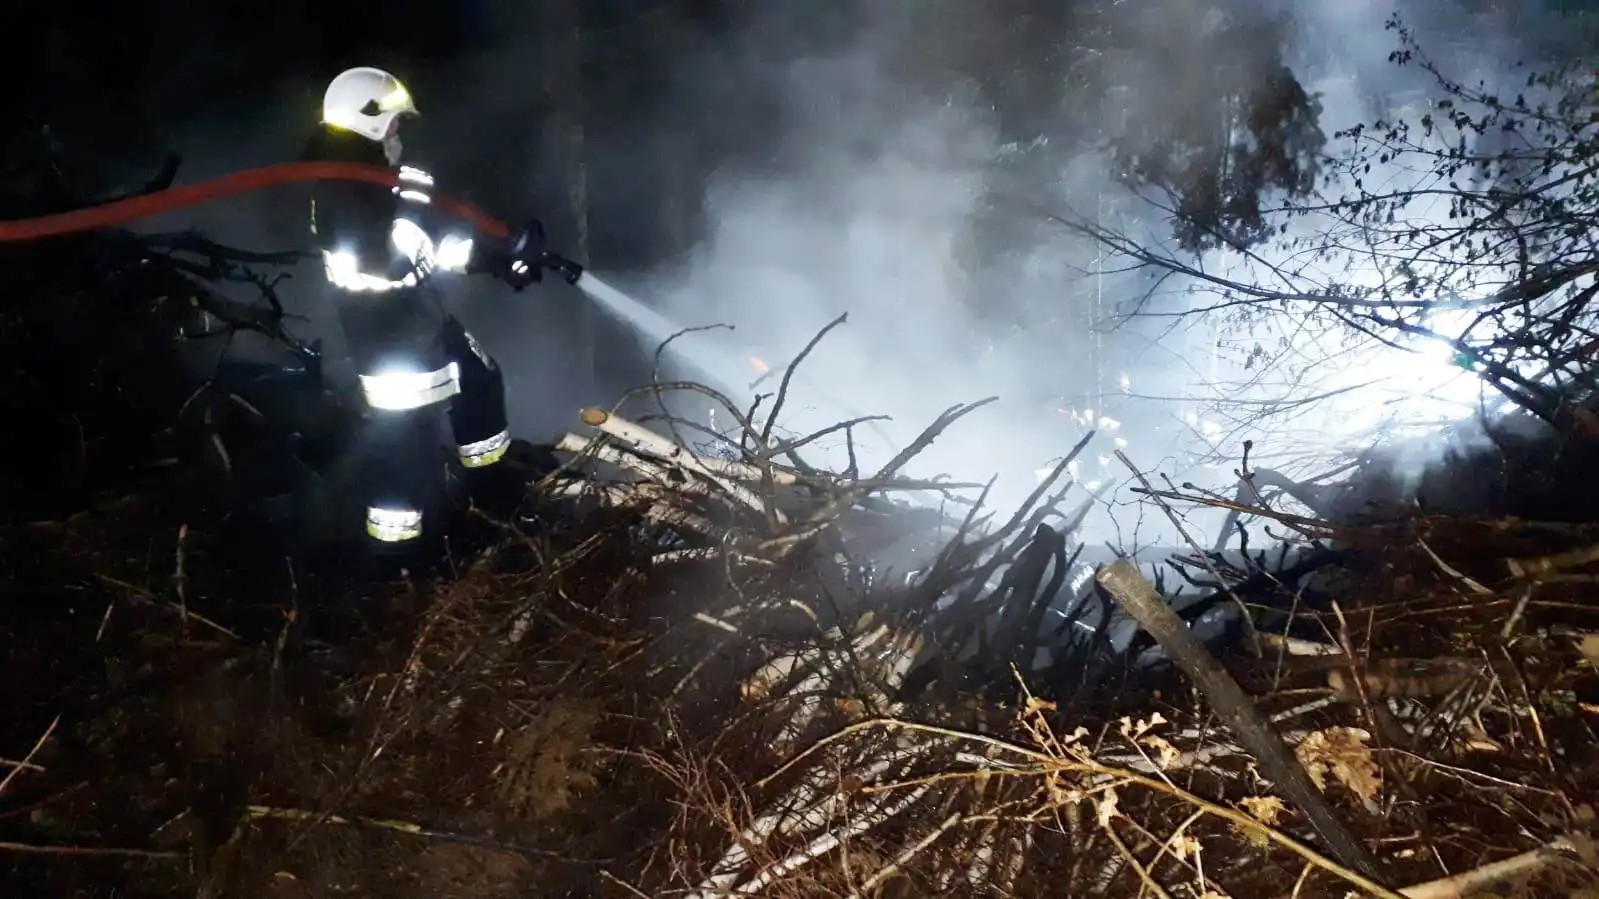 Moszczenica Niżna: Strażacy gasili pożar sterty gałęzi w lesie. Przyczyną pożaru było podpalenie